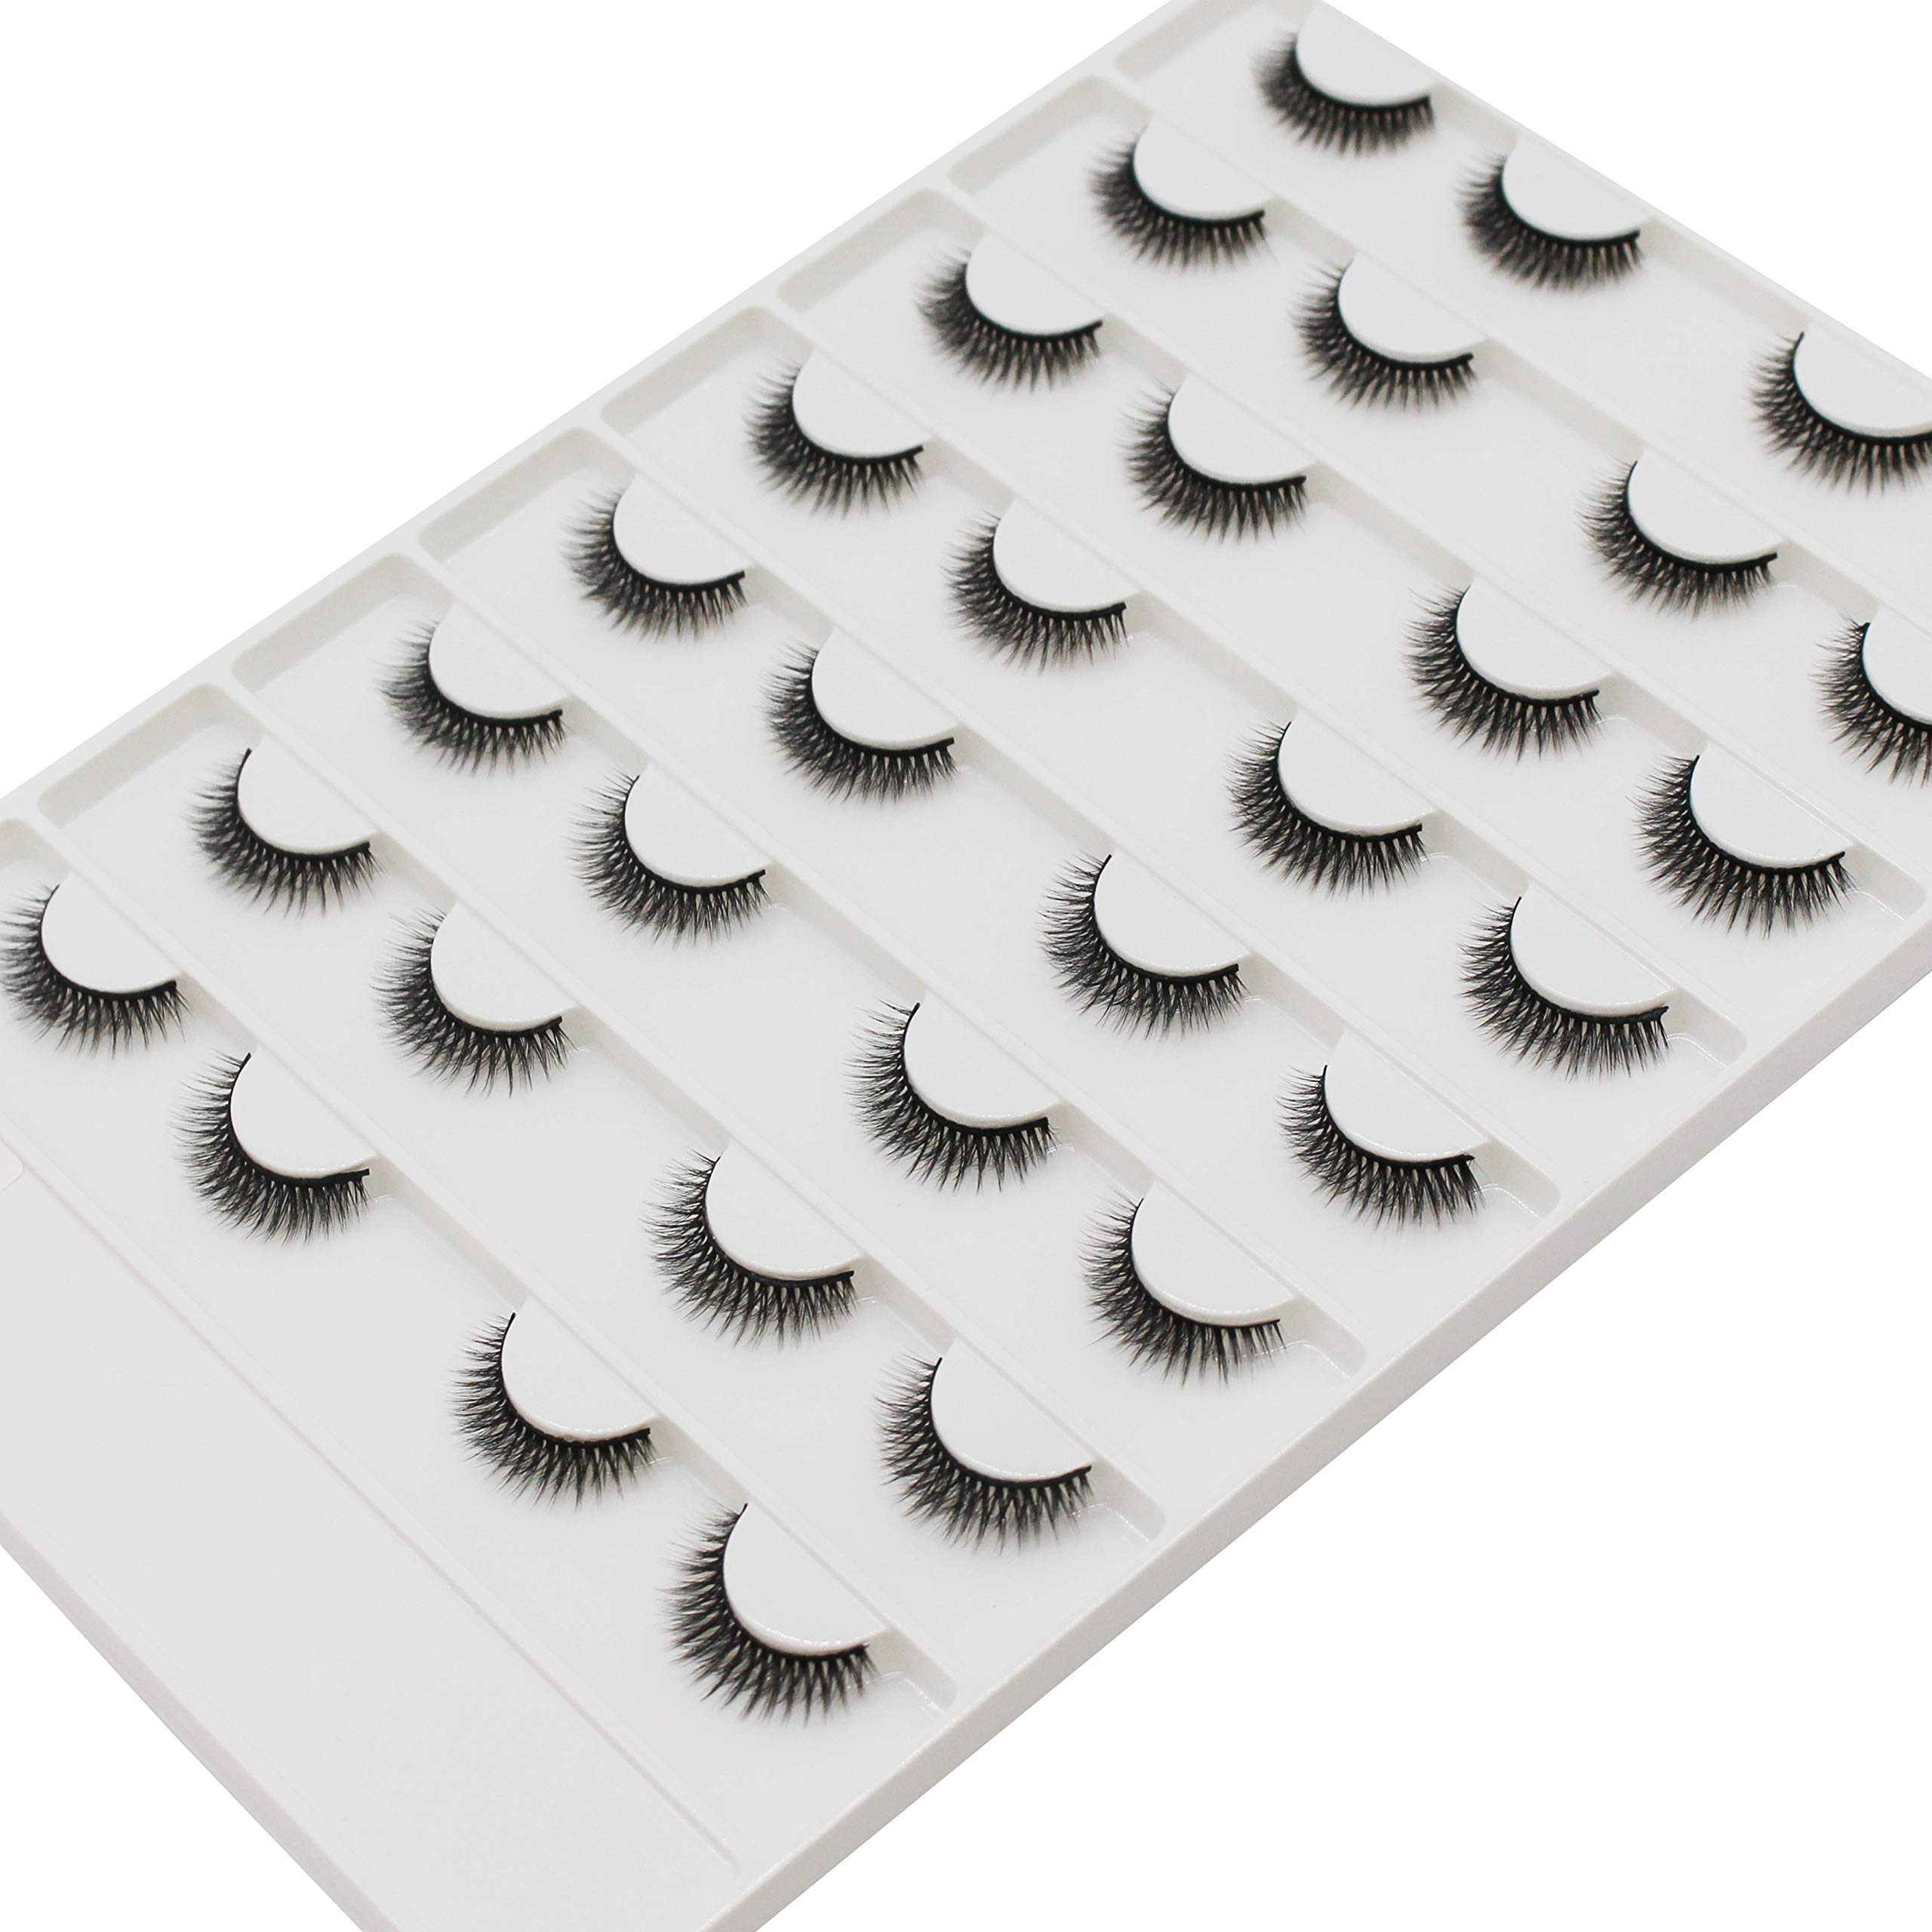 Dedila Large Tray Mink Eyelashes 16Pairs Handmade 3D Nature Short False Eyelashes Reusable Double Layer Soft and Light Weight Volume Eye Lashes Extensions (2506)